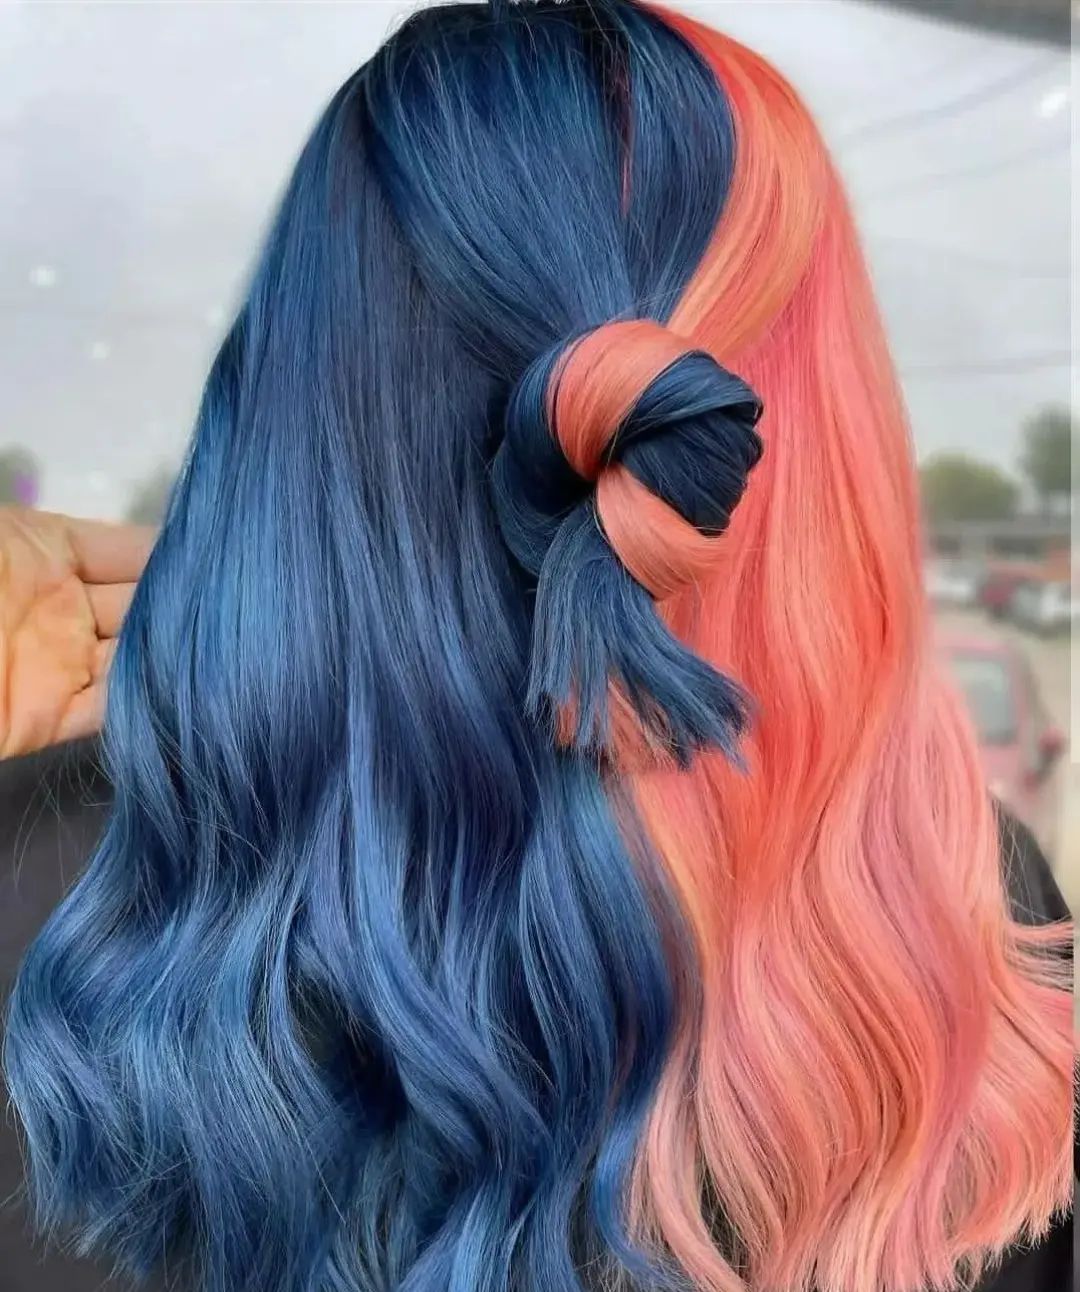 Vivid Hair Color 134 Vivid hair color | Vivid hair color ideas | Vivid hair color ideas for women Vivid Hair Color for Women